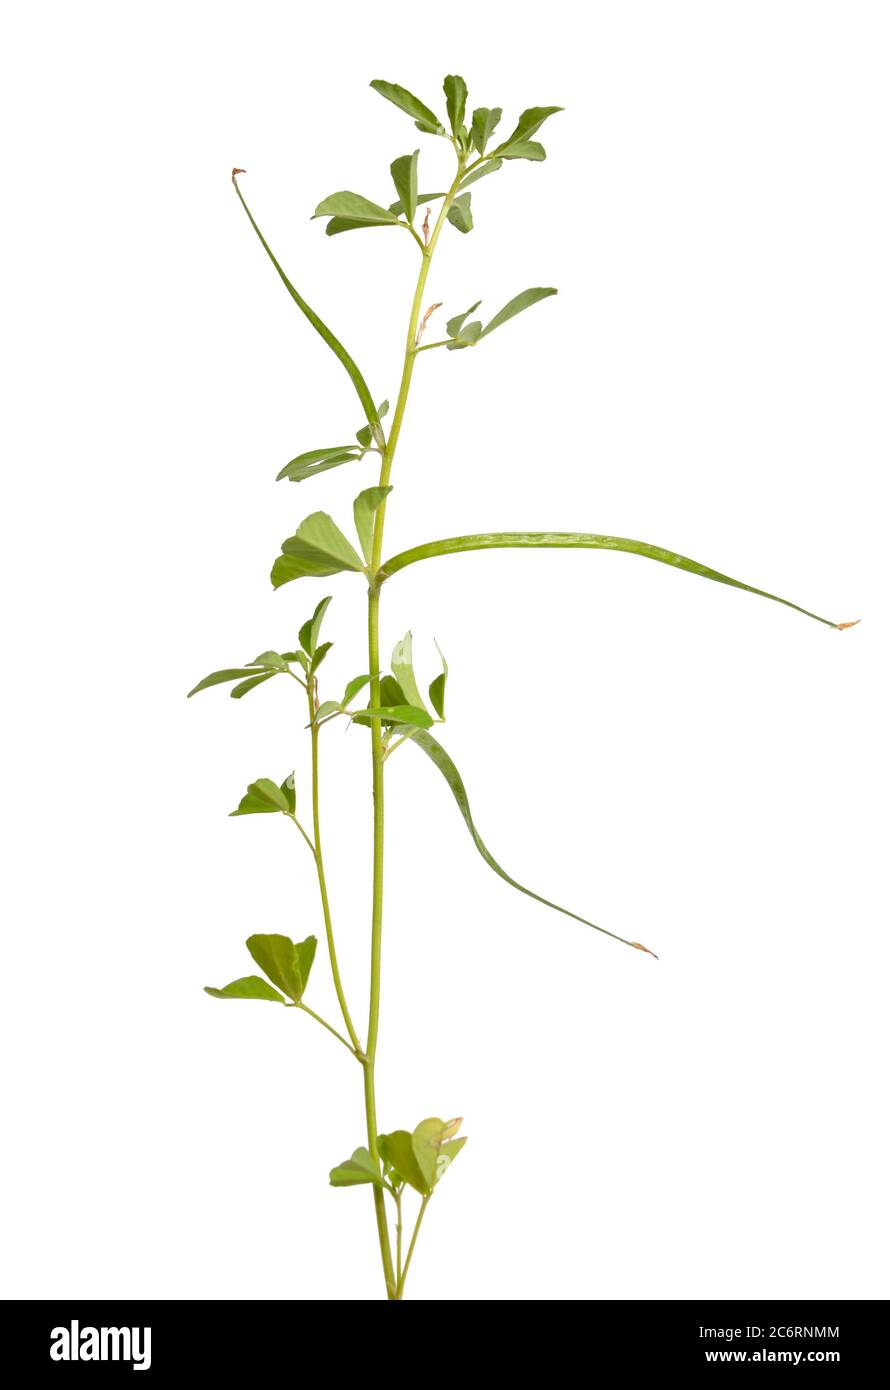 Bockshornklee oder Trigonella foenum-graecum. Grüne Pflanze. Isoliert auf weißem Hintergrund Stockfoto